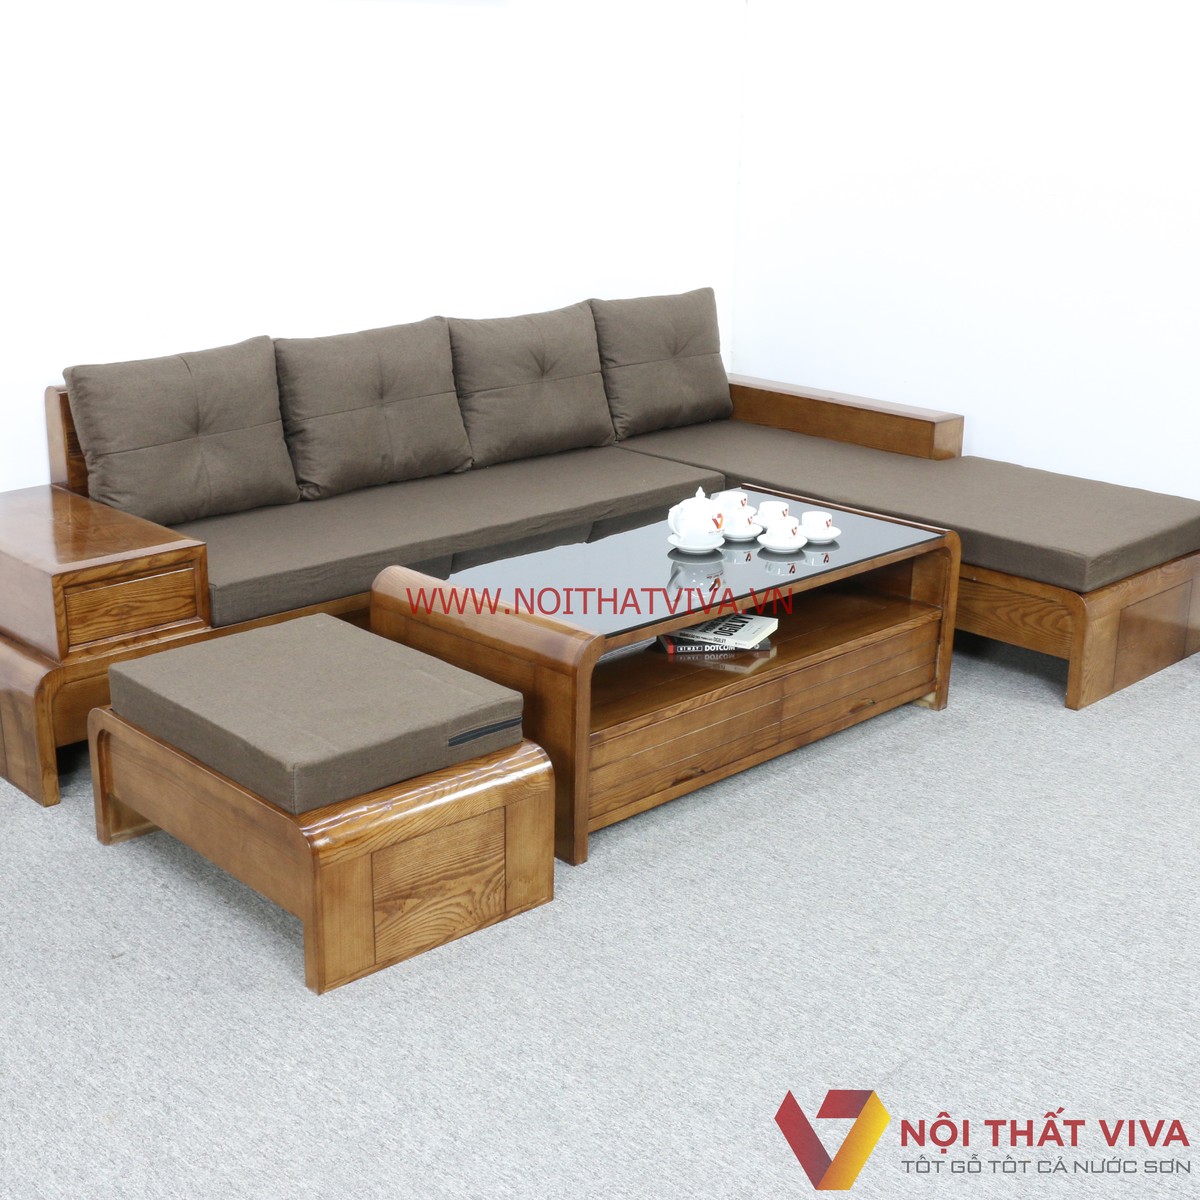 Sofa gỗ hiện đại giá rẻ có những mẫu nào đáng mua?